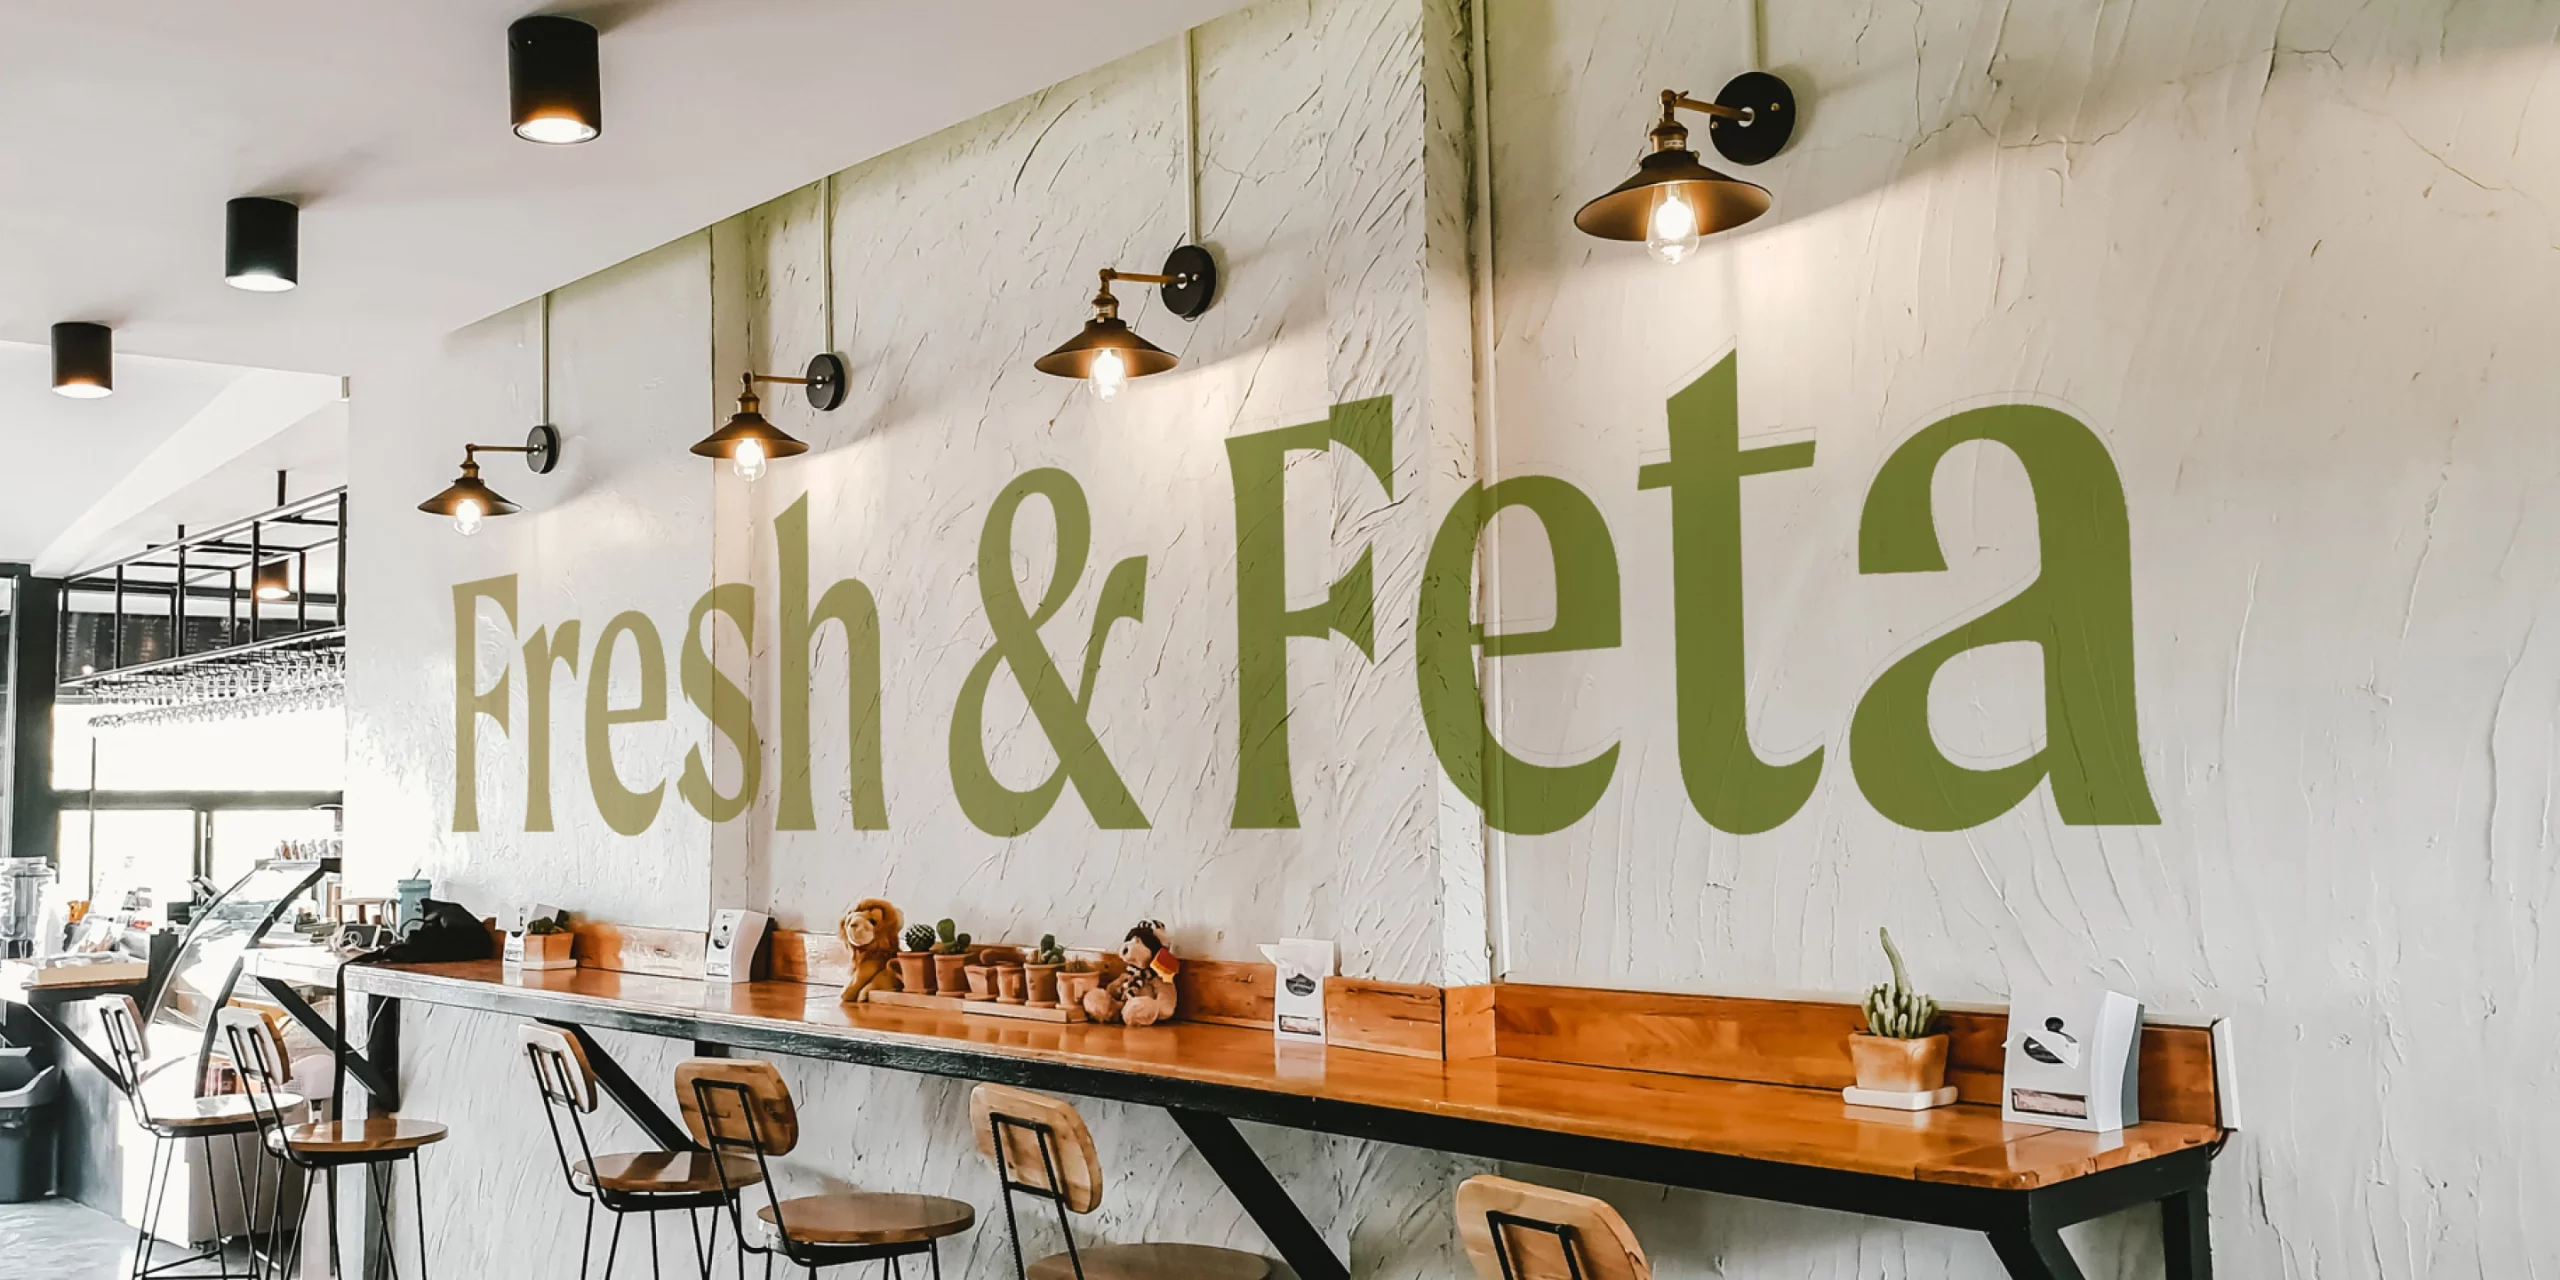 Fresh & Feta, Mediterranean Restaurant Branding, Mock-Up